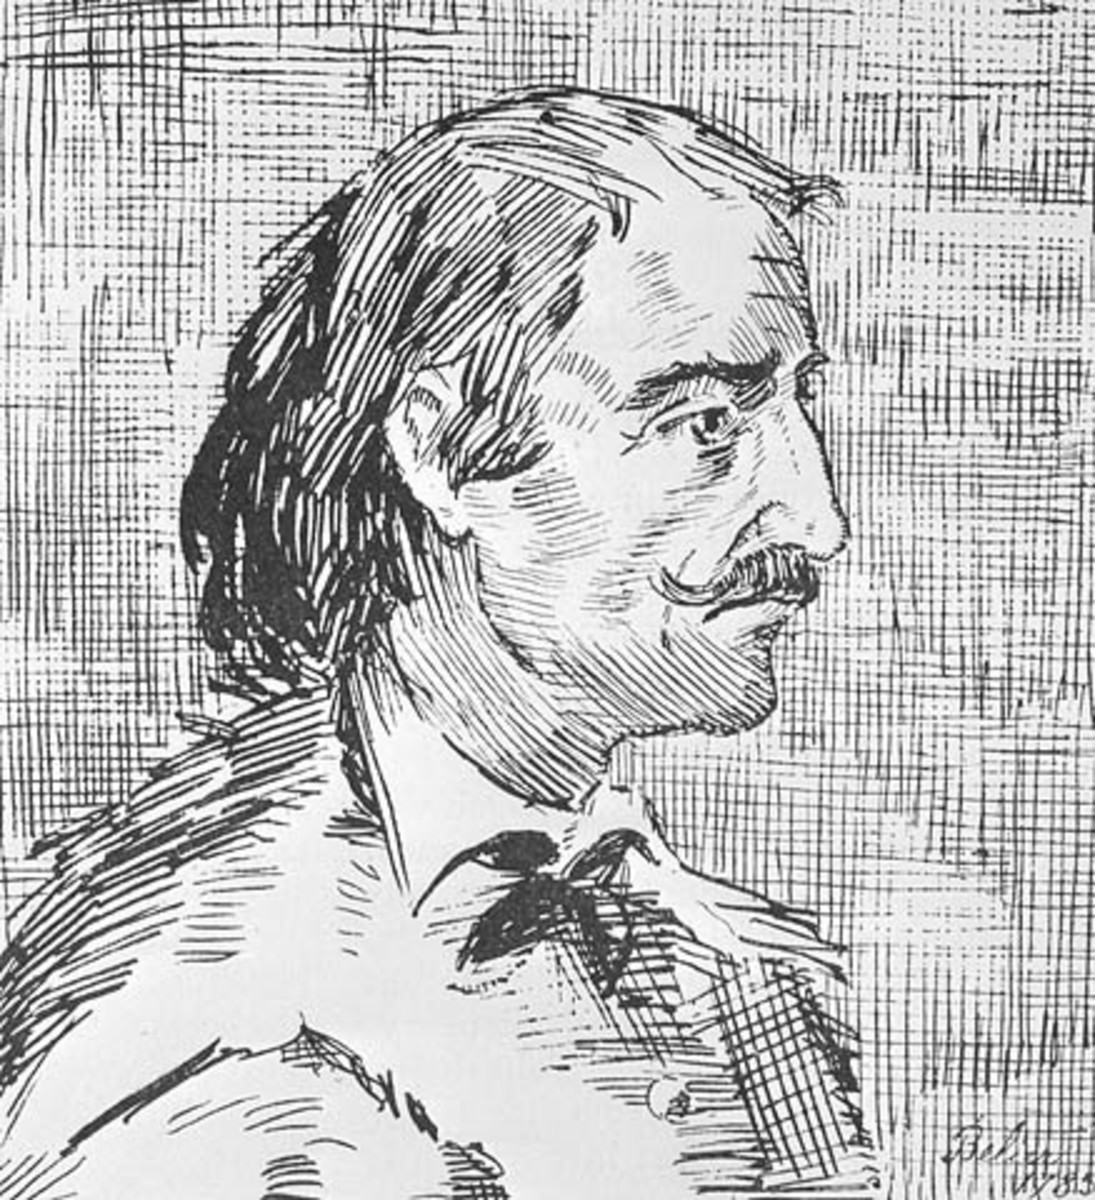 Pierre-Esprit Radisson (artist unidentified)